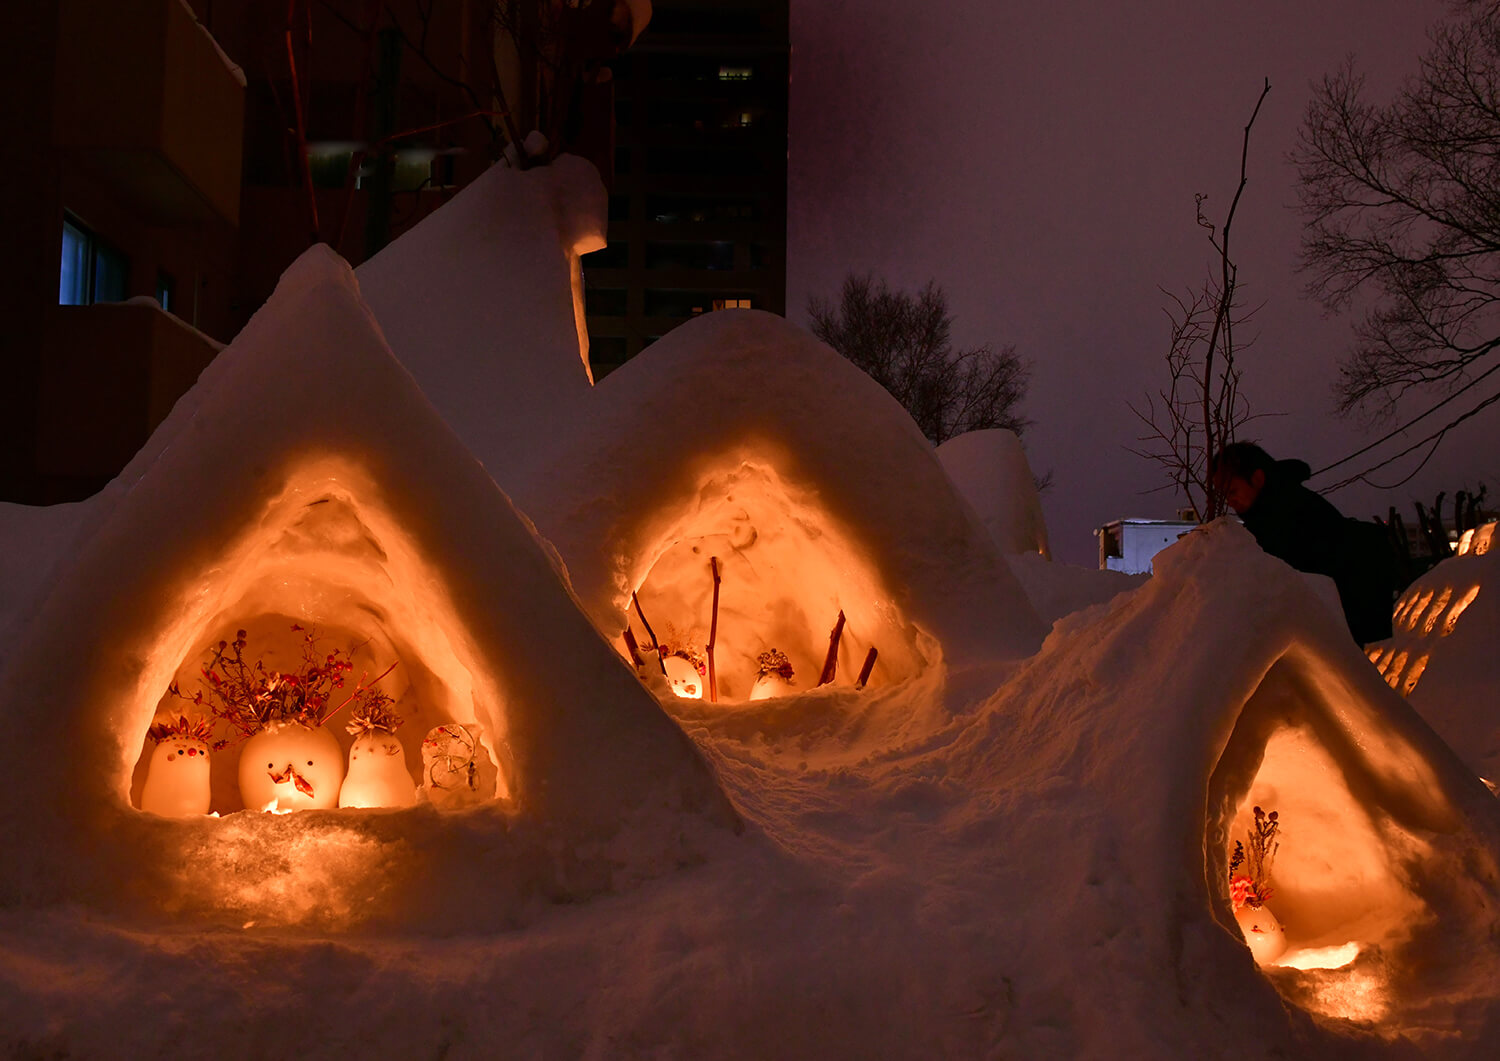 個性豊かな雪のオブジェに、厳しい冬と共に生きる人々の遊び心が見え隠れする